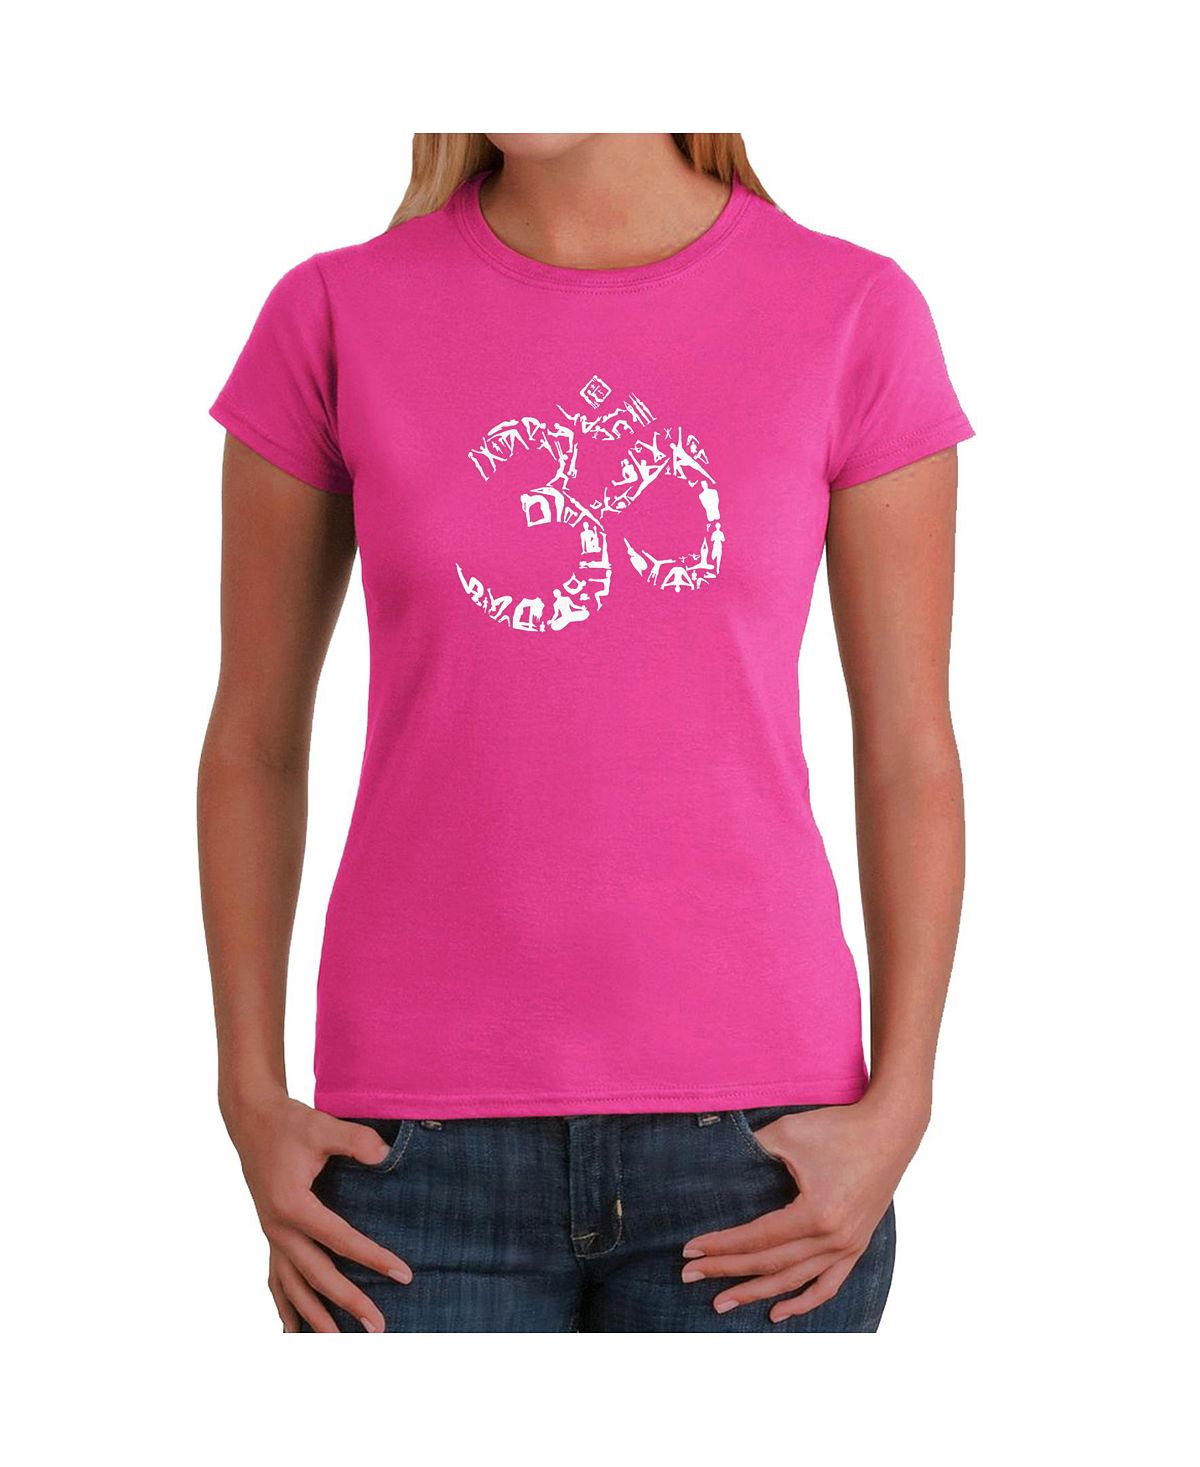 Женская футболка word art - символ ом из поз йоги LA Pop Art, розовый фусу л альманах индуизм и буддизм краткая энциклопедия